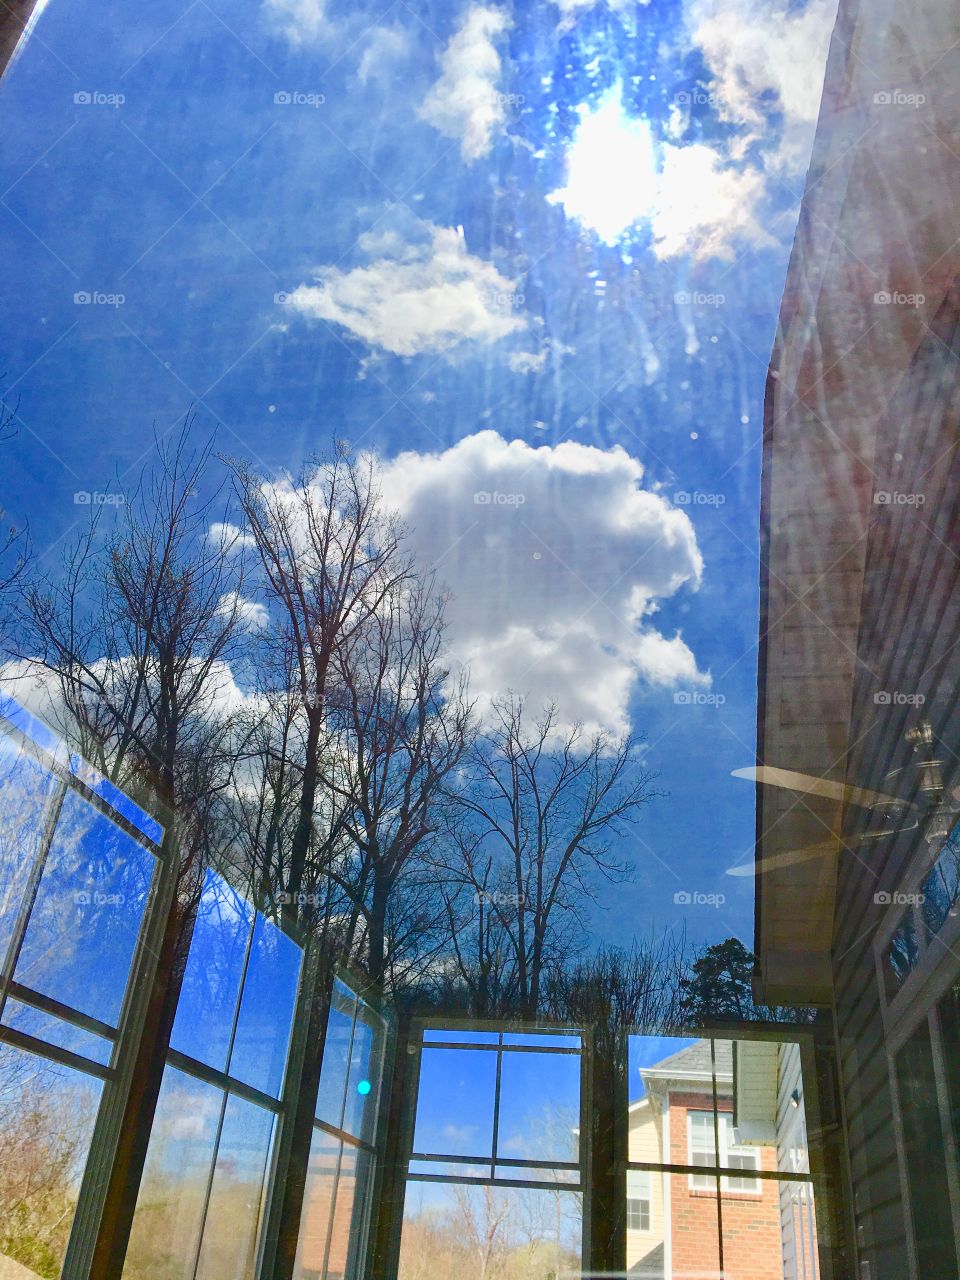 Cloud through the glass door